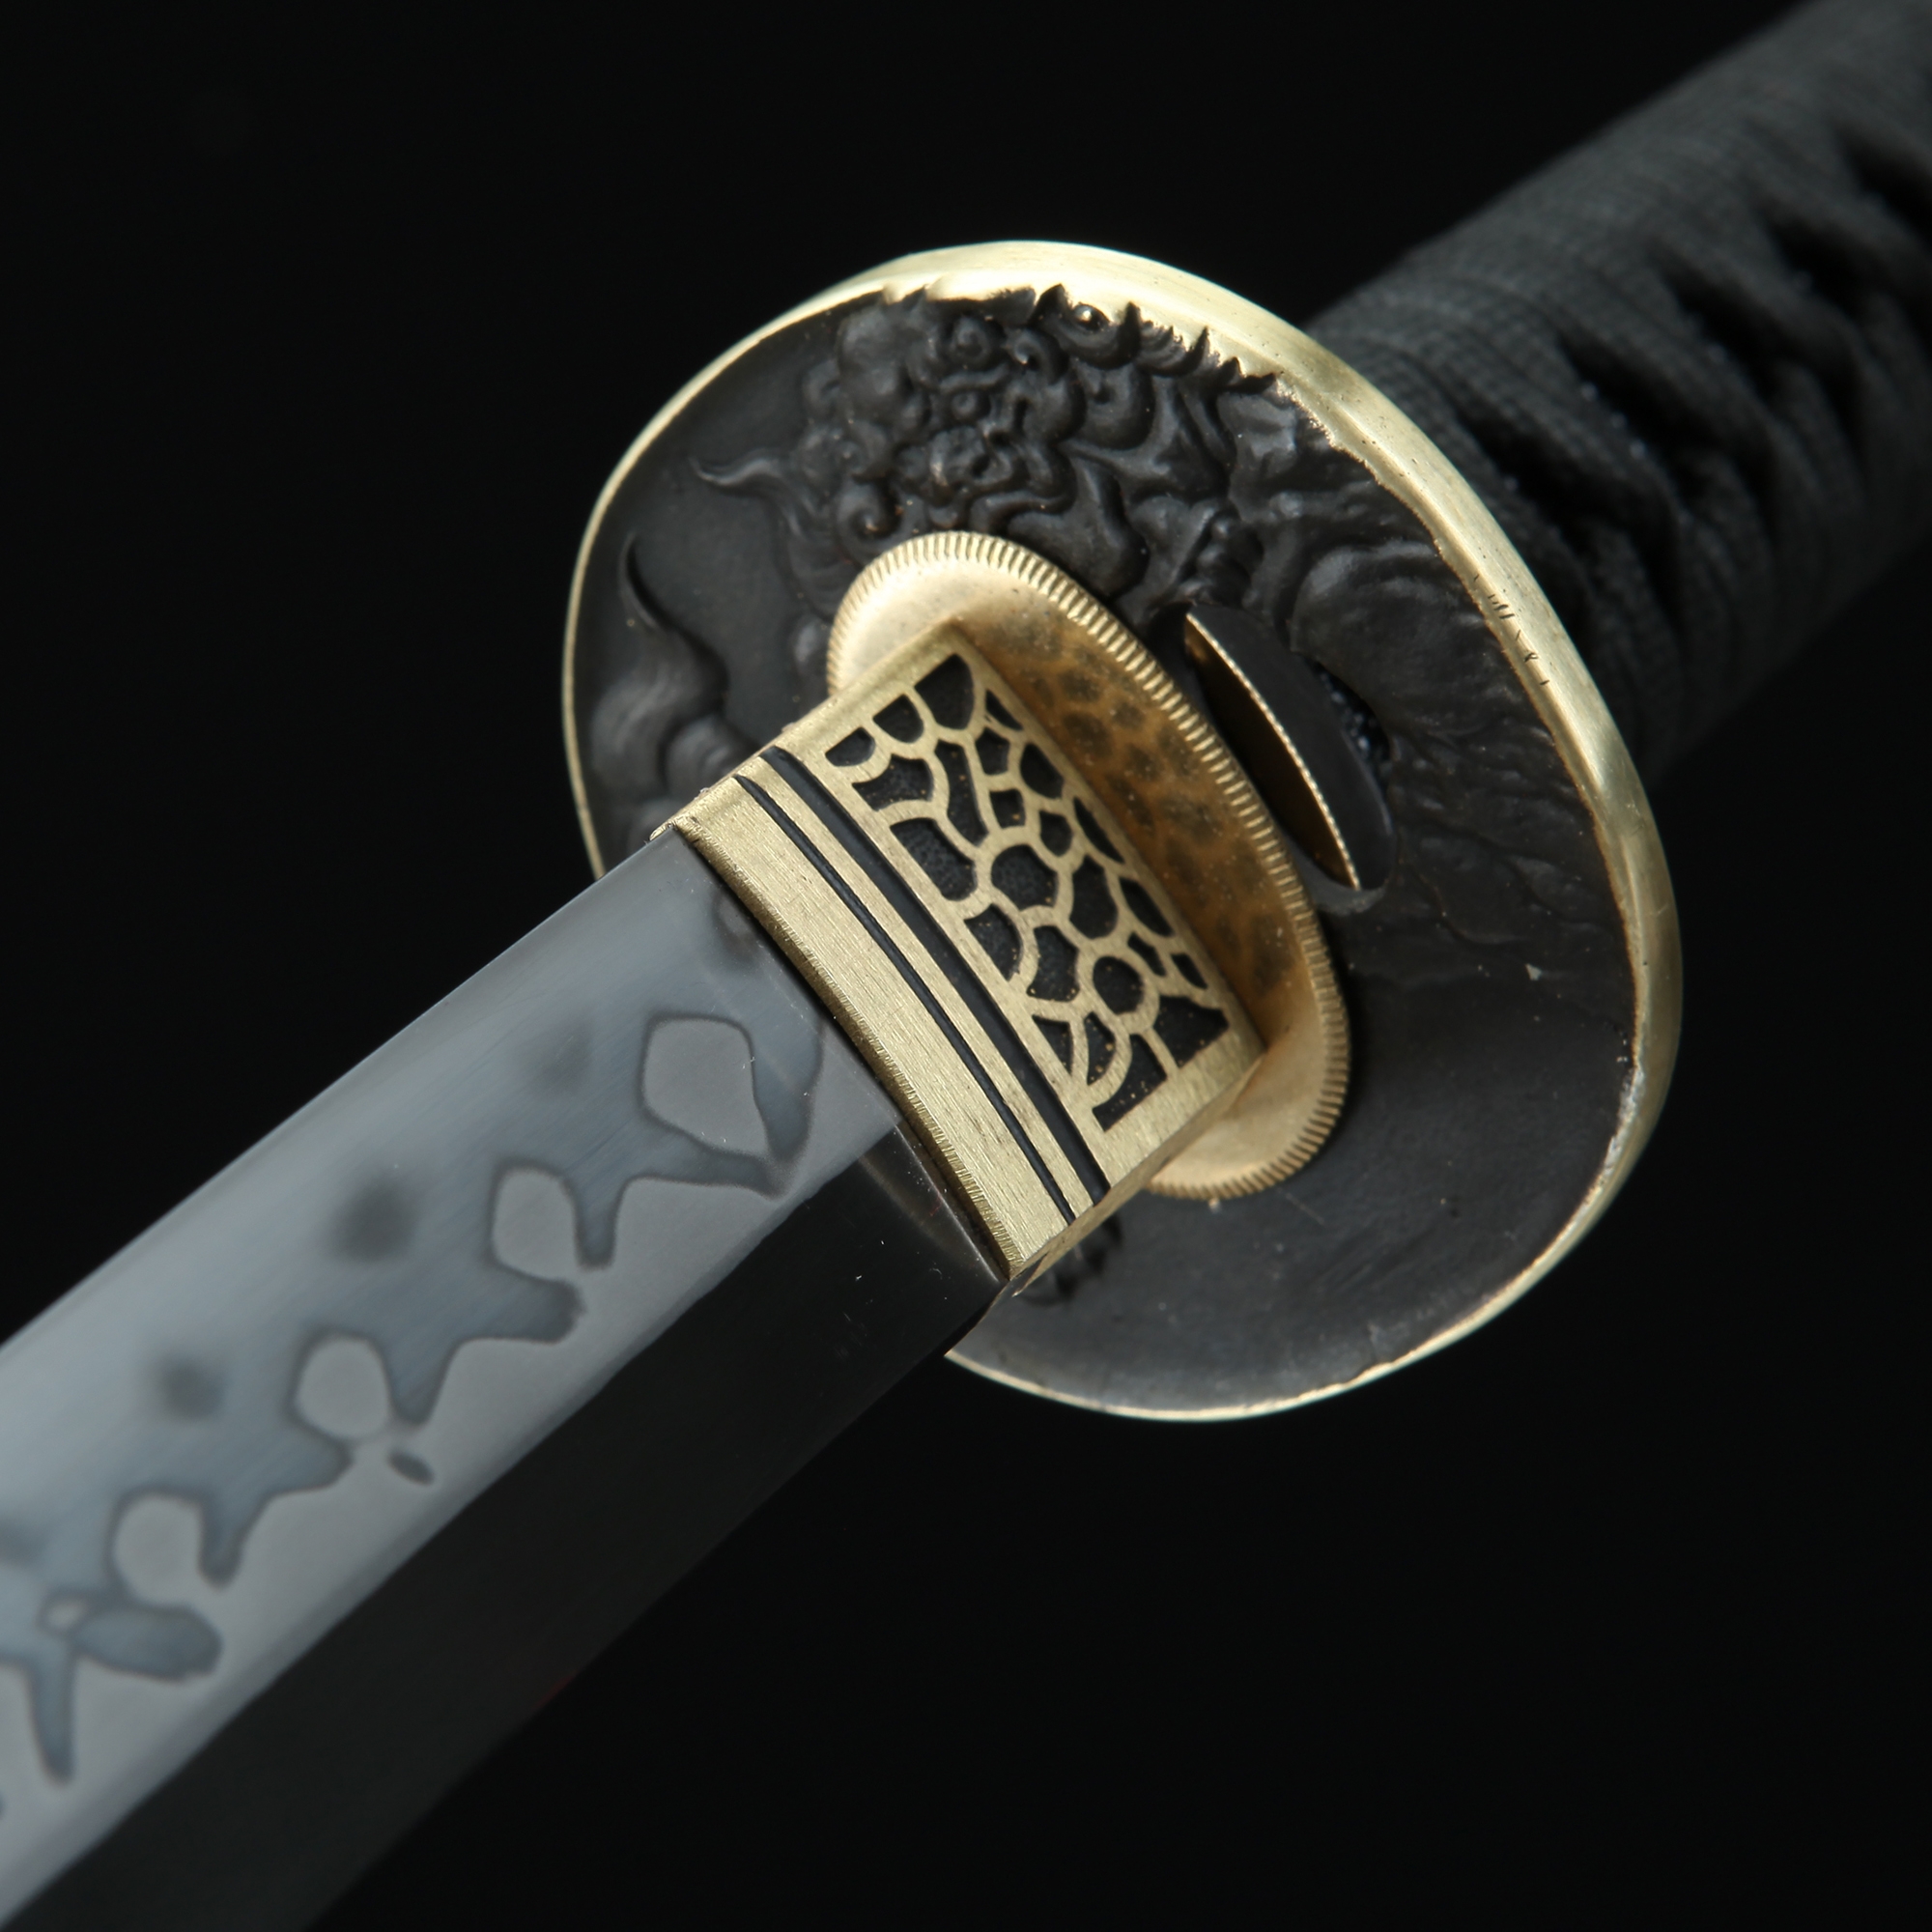 Real Katana  Handmade Real Japanese Katana Sword T10 Folded Clay Tempered  Steel Real Hamon - TrueKatana